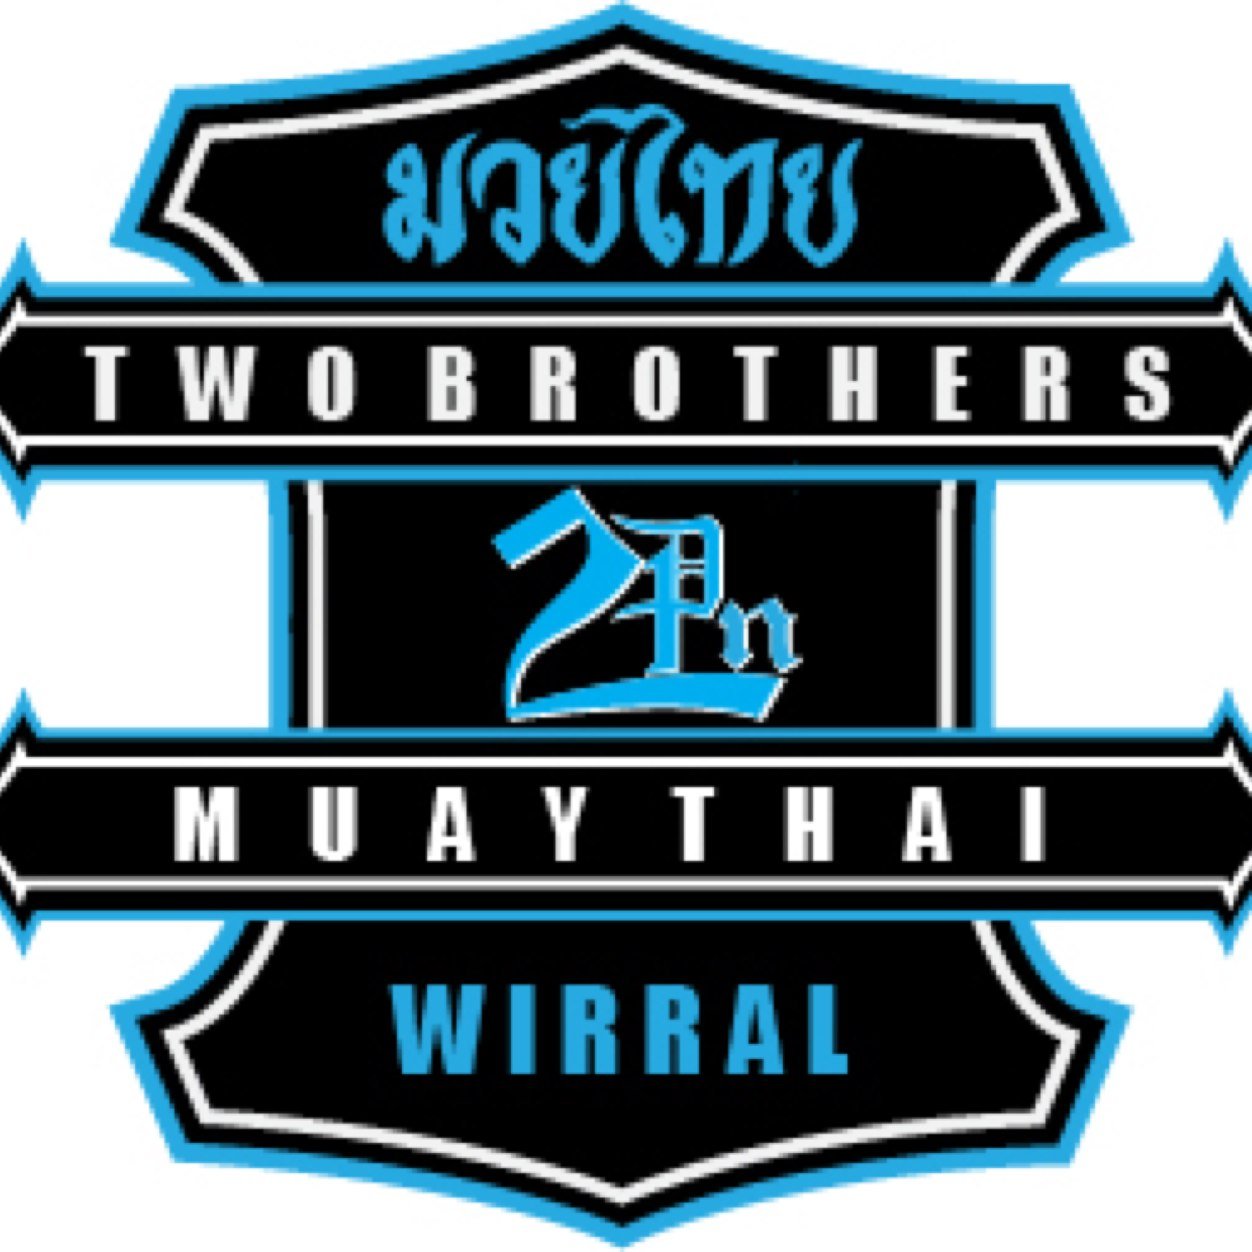 07816972453 #MuayThai #ThaiBoxing #wirral